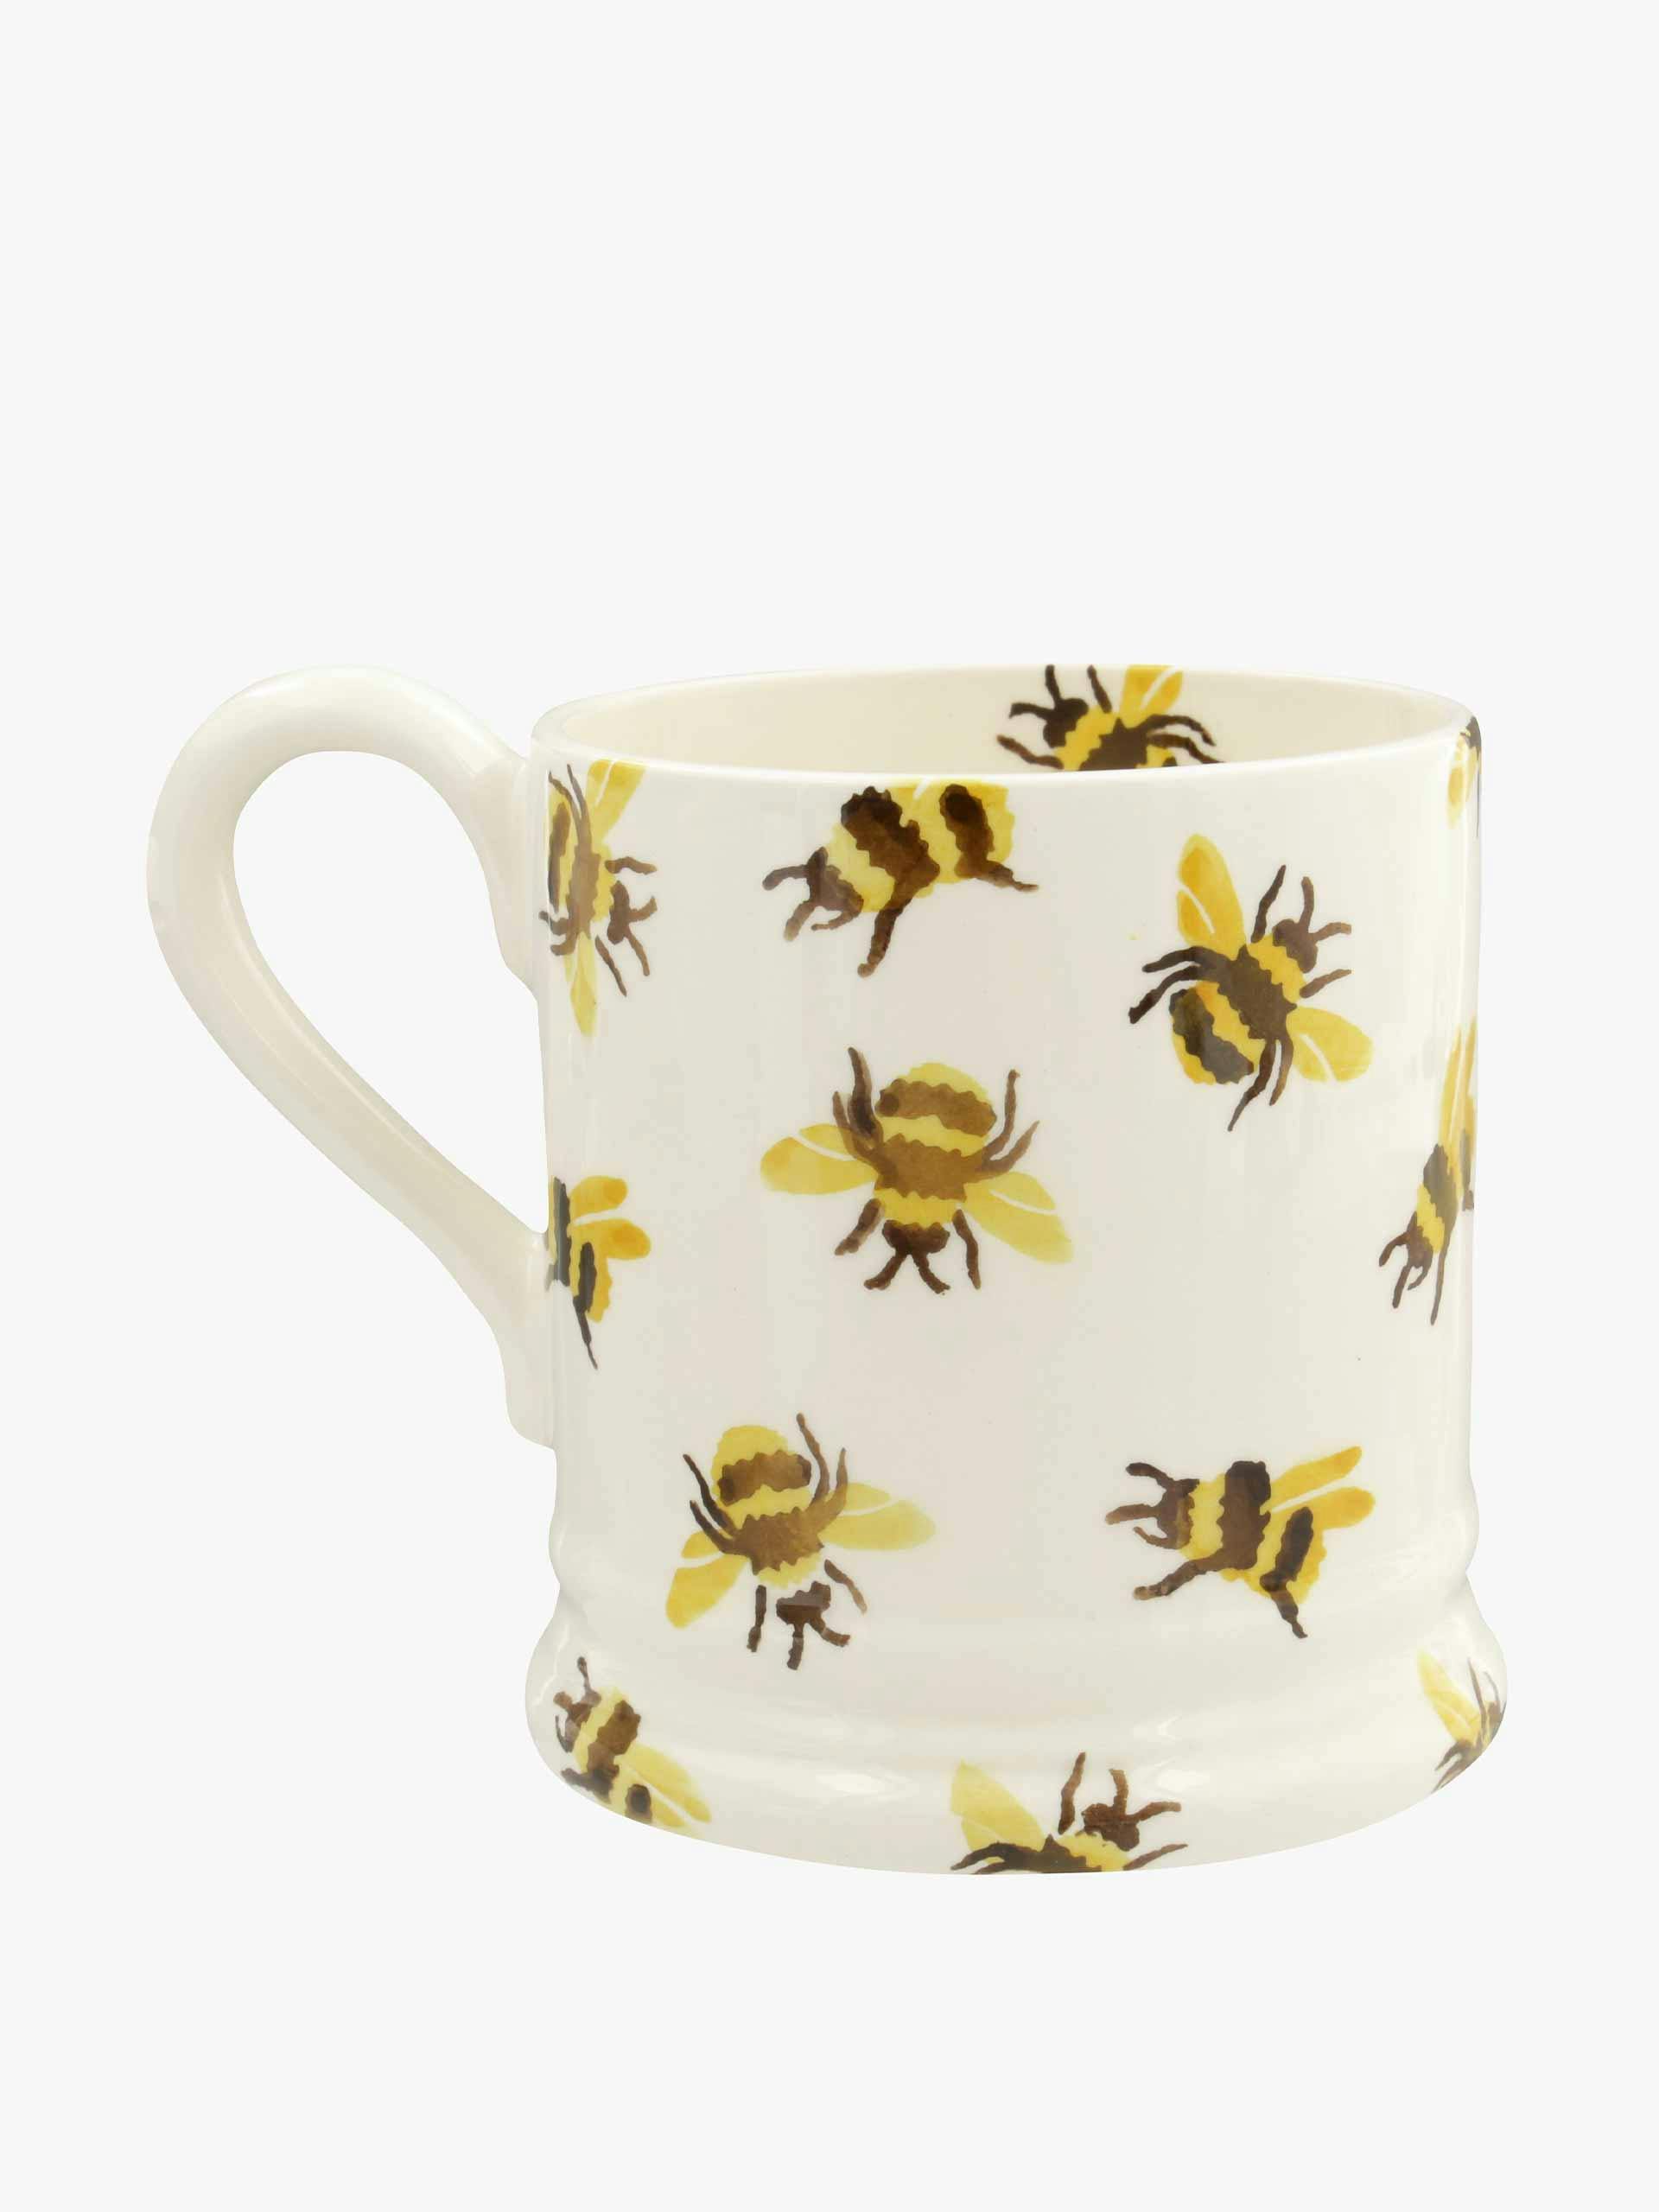 Bumblebee printed ceramic mug